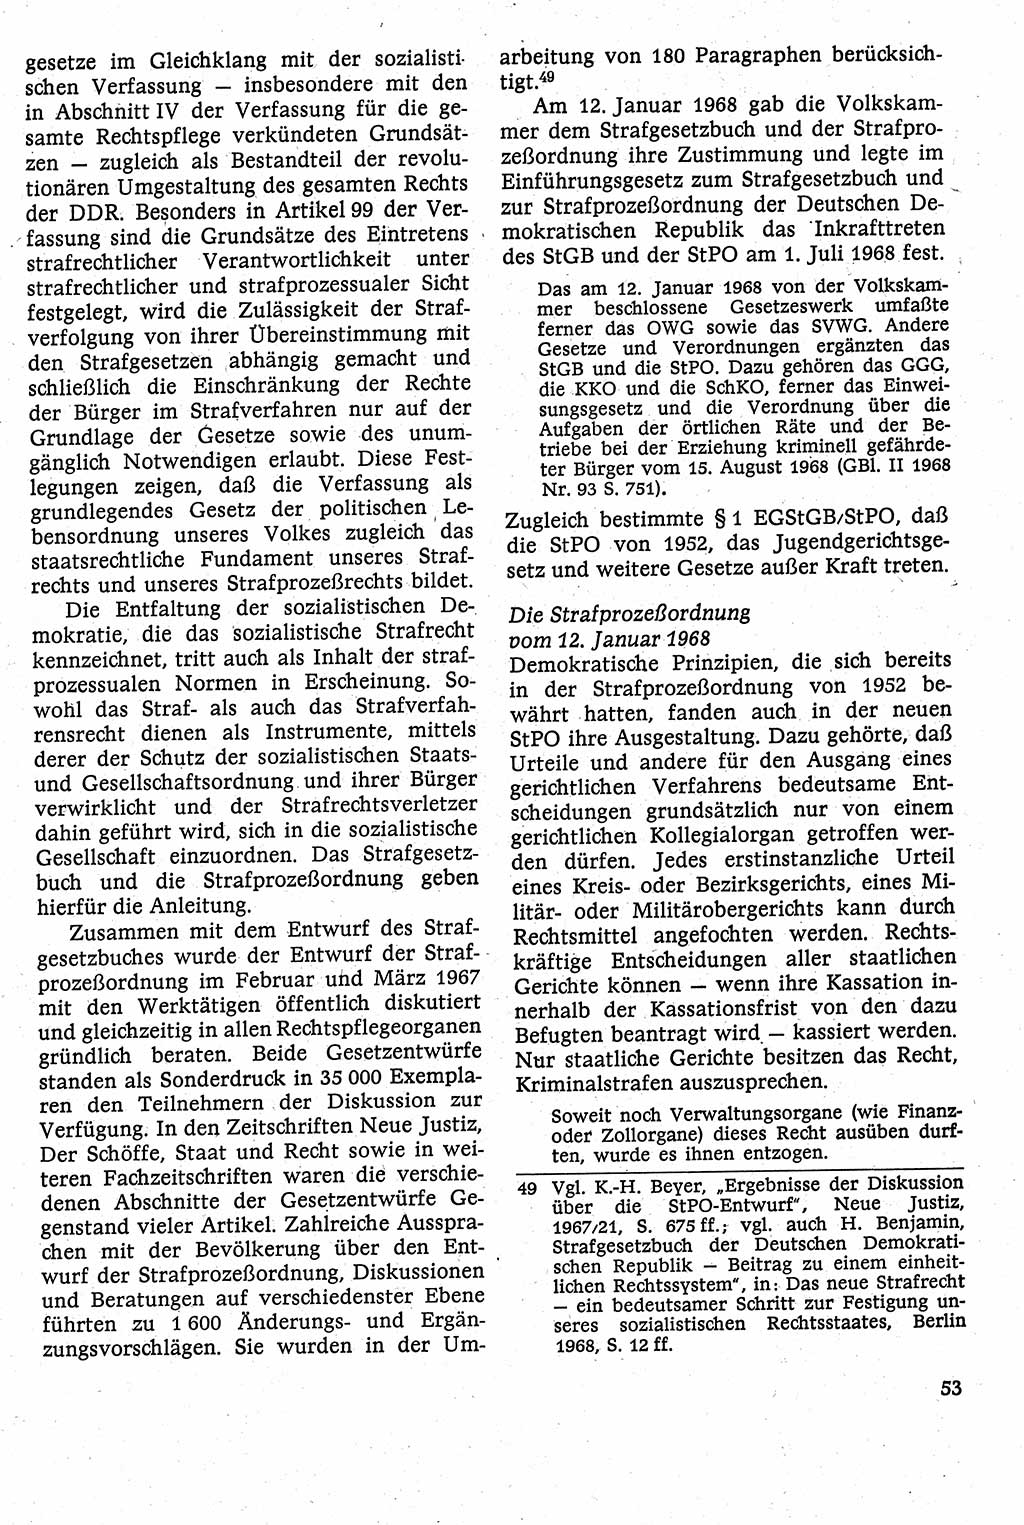 Strafverfahrensrecht [Deutsche Demokratische Republik (DDR)], Lehrbuch 1982, Seite 53 (Strafverf.-R. DDR Lb. 1982, S. 53)